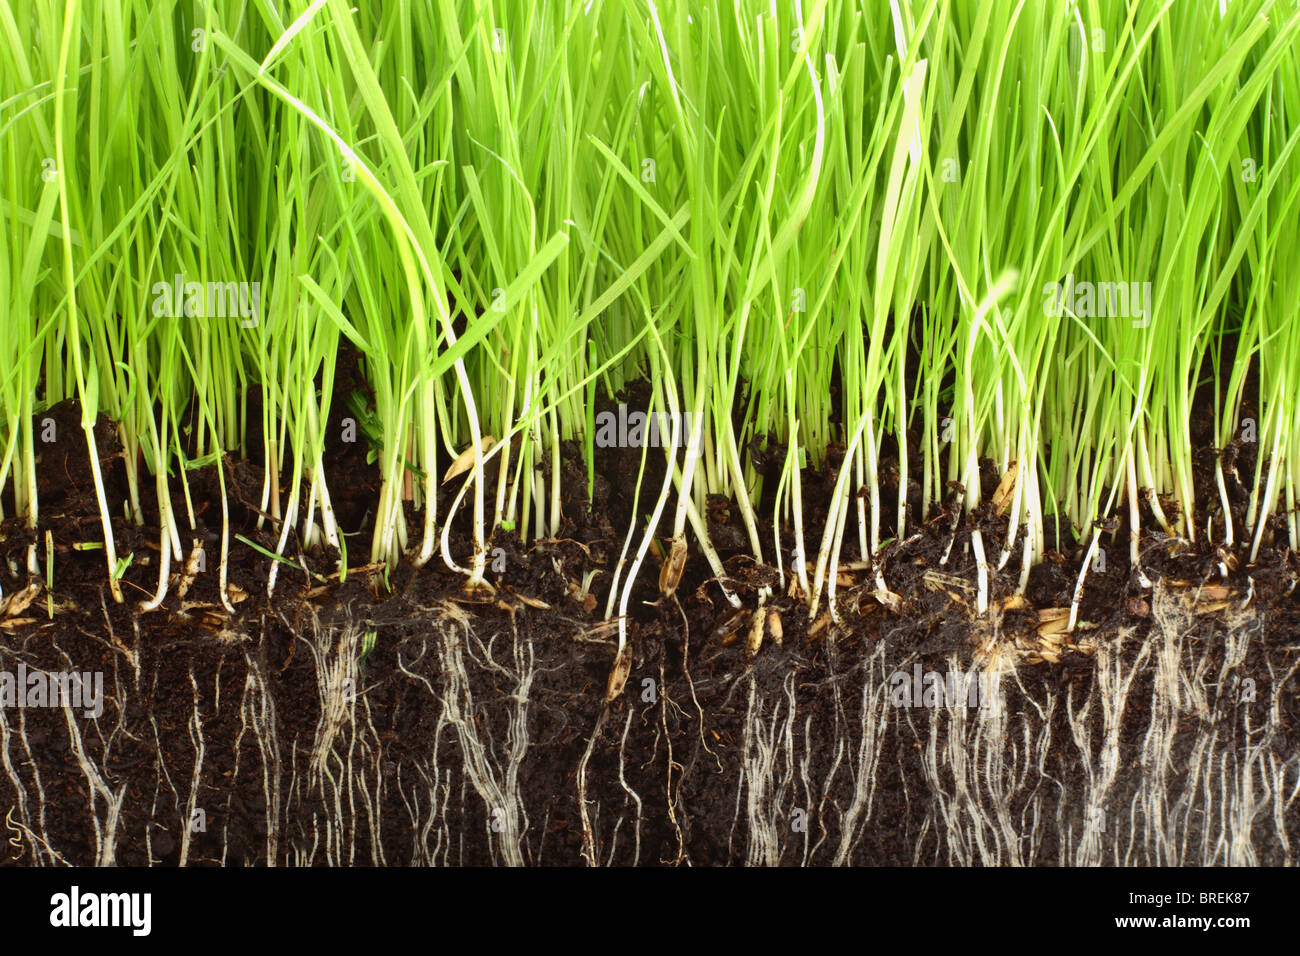 Frische Gräser wachsen in Kompost mit Nahaufnahme Detail der Wurzeln zeigen. Stockfoto